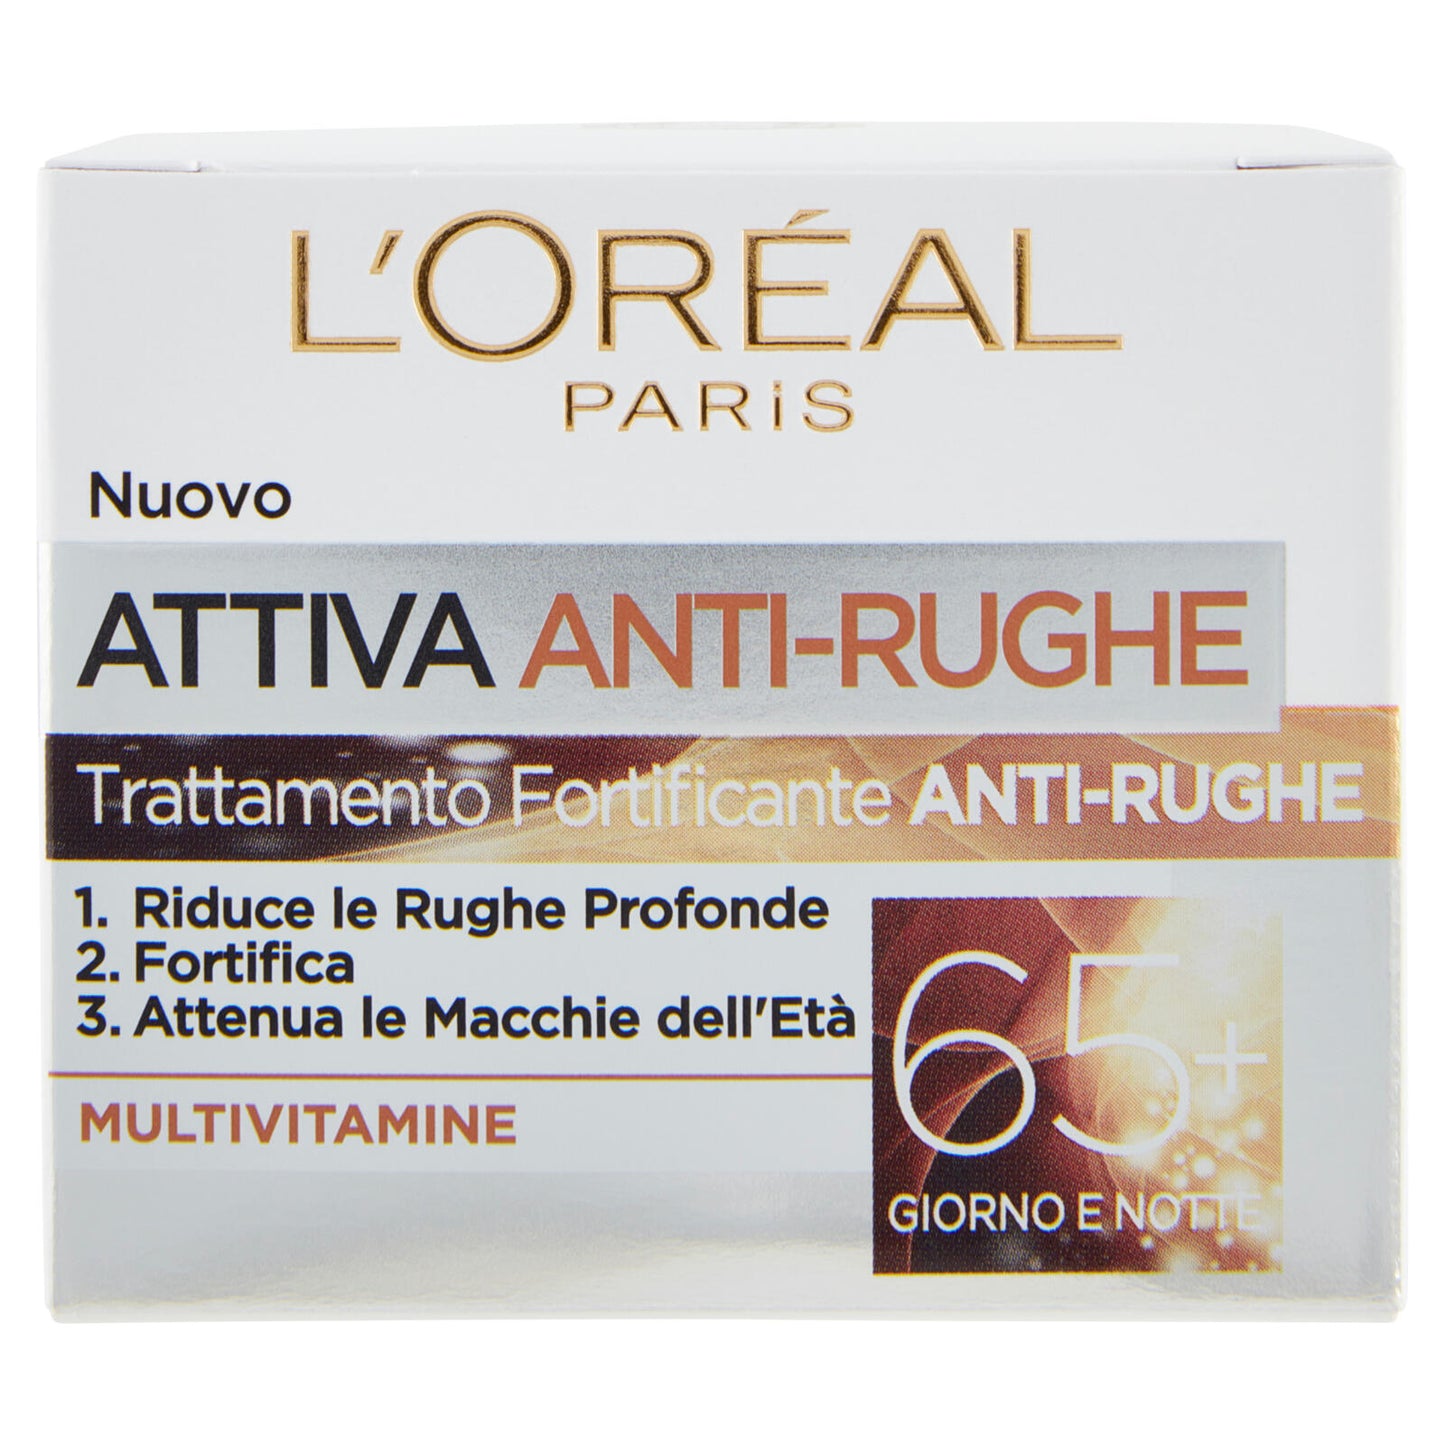 L'Oréal Paris Crema Viso Giorno e Notte Attiva Anti-Rughe, Trattamento Fortificante 65+